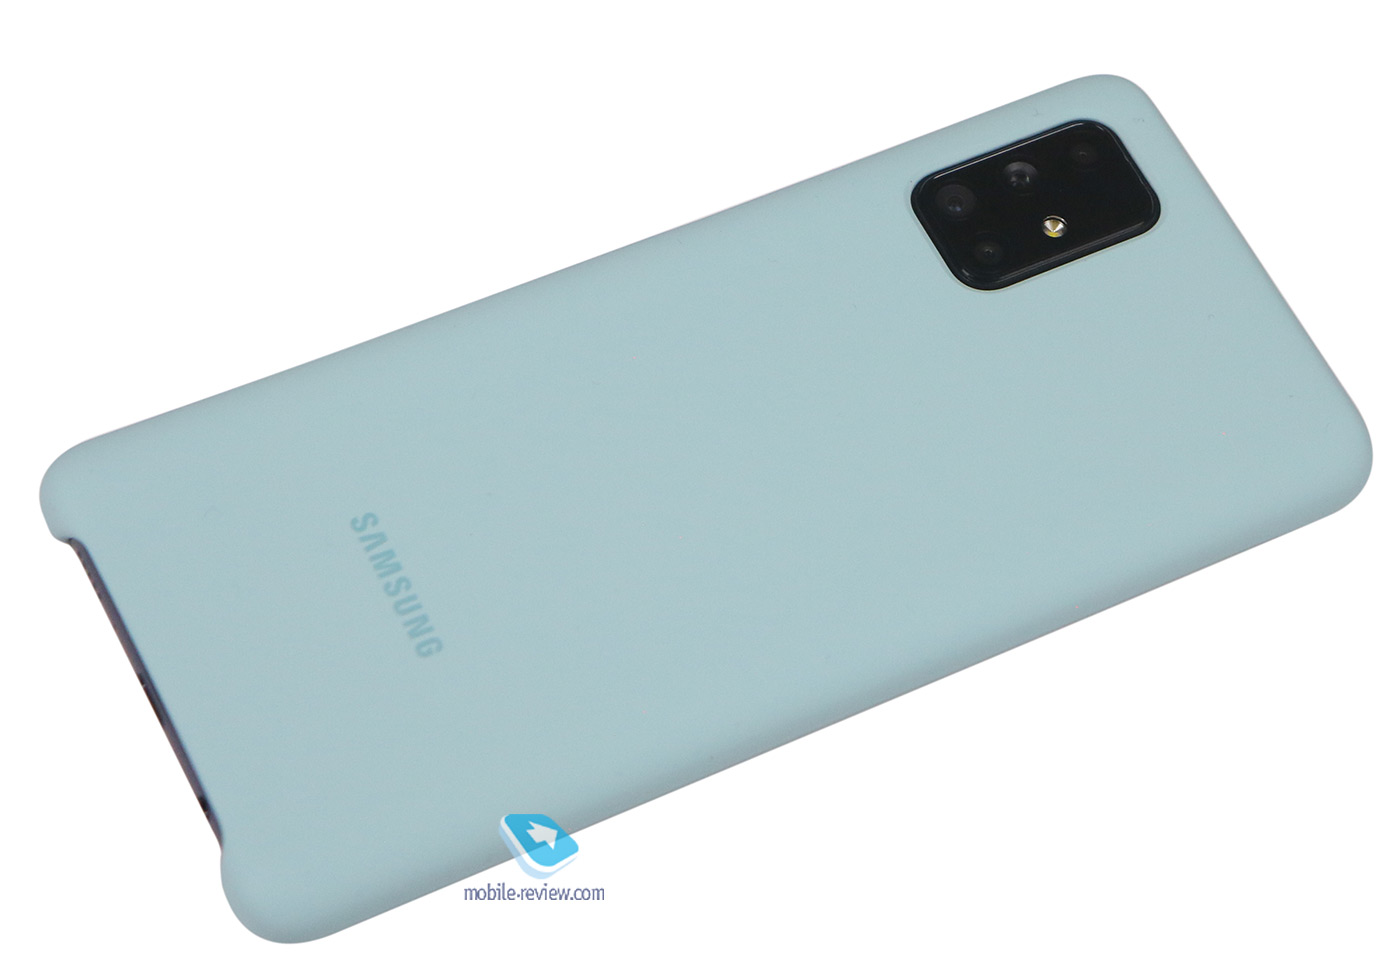   Samsung A71 (SM-A715F/FN/DS)